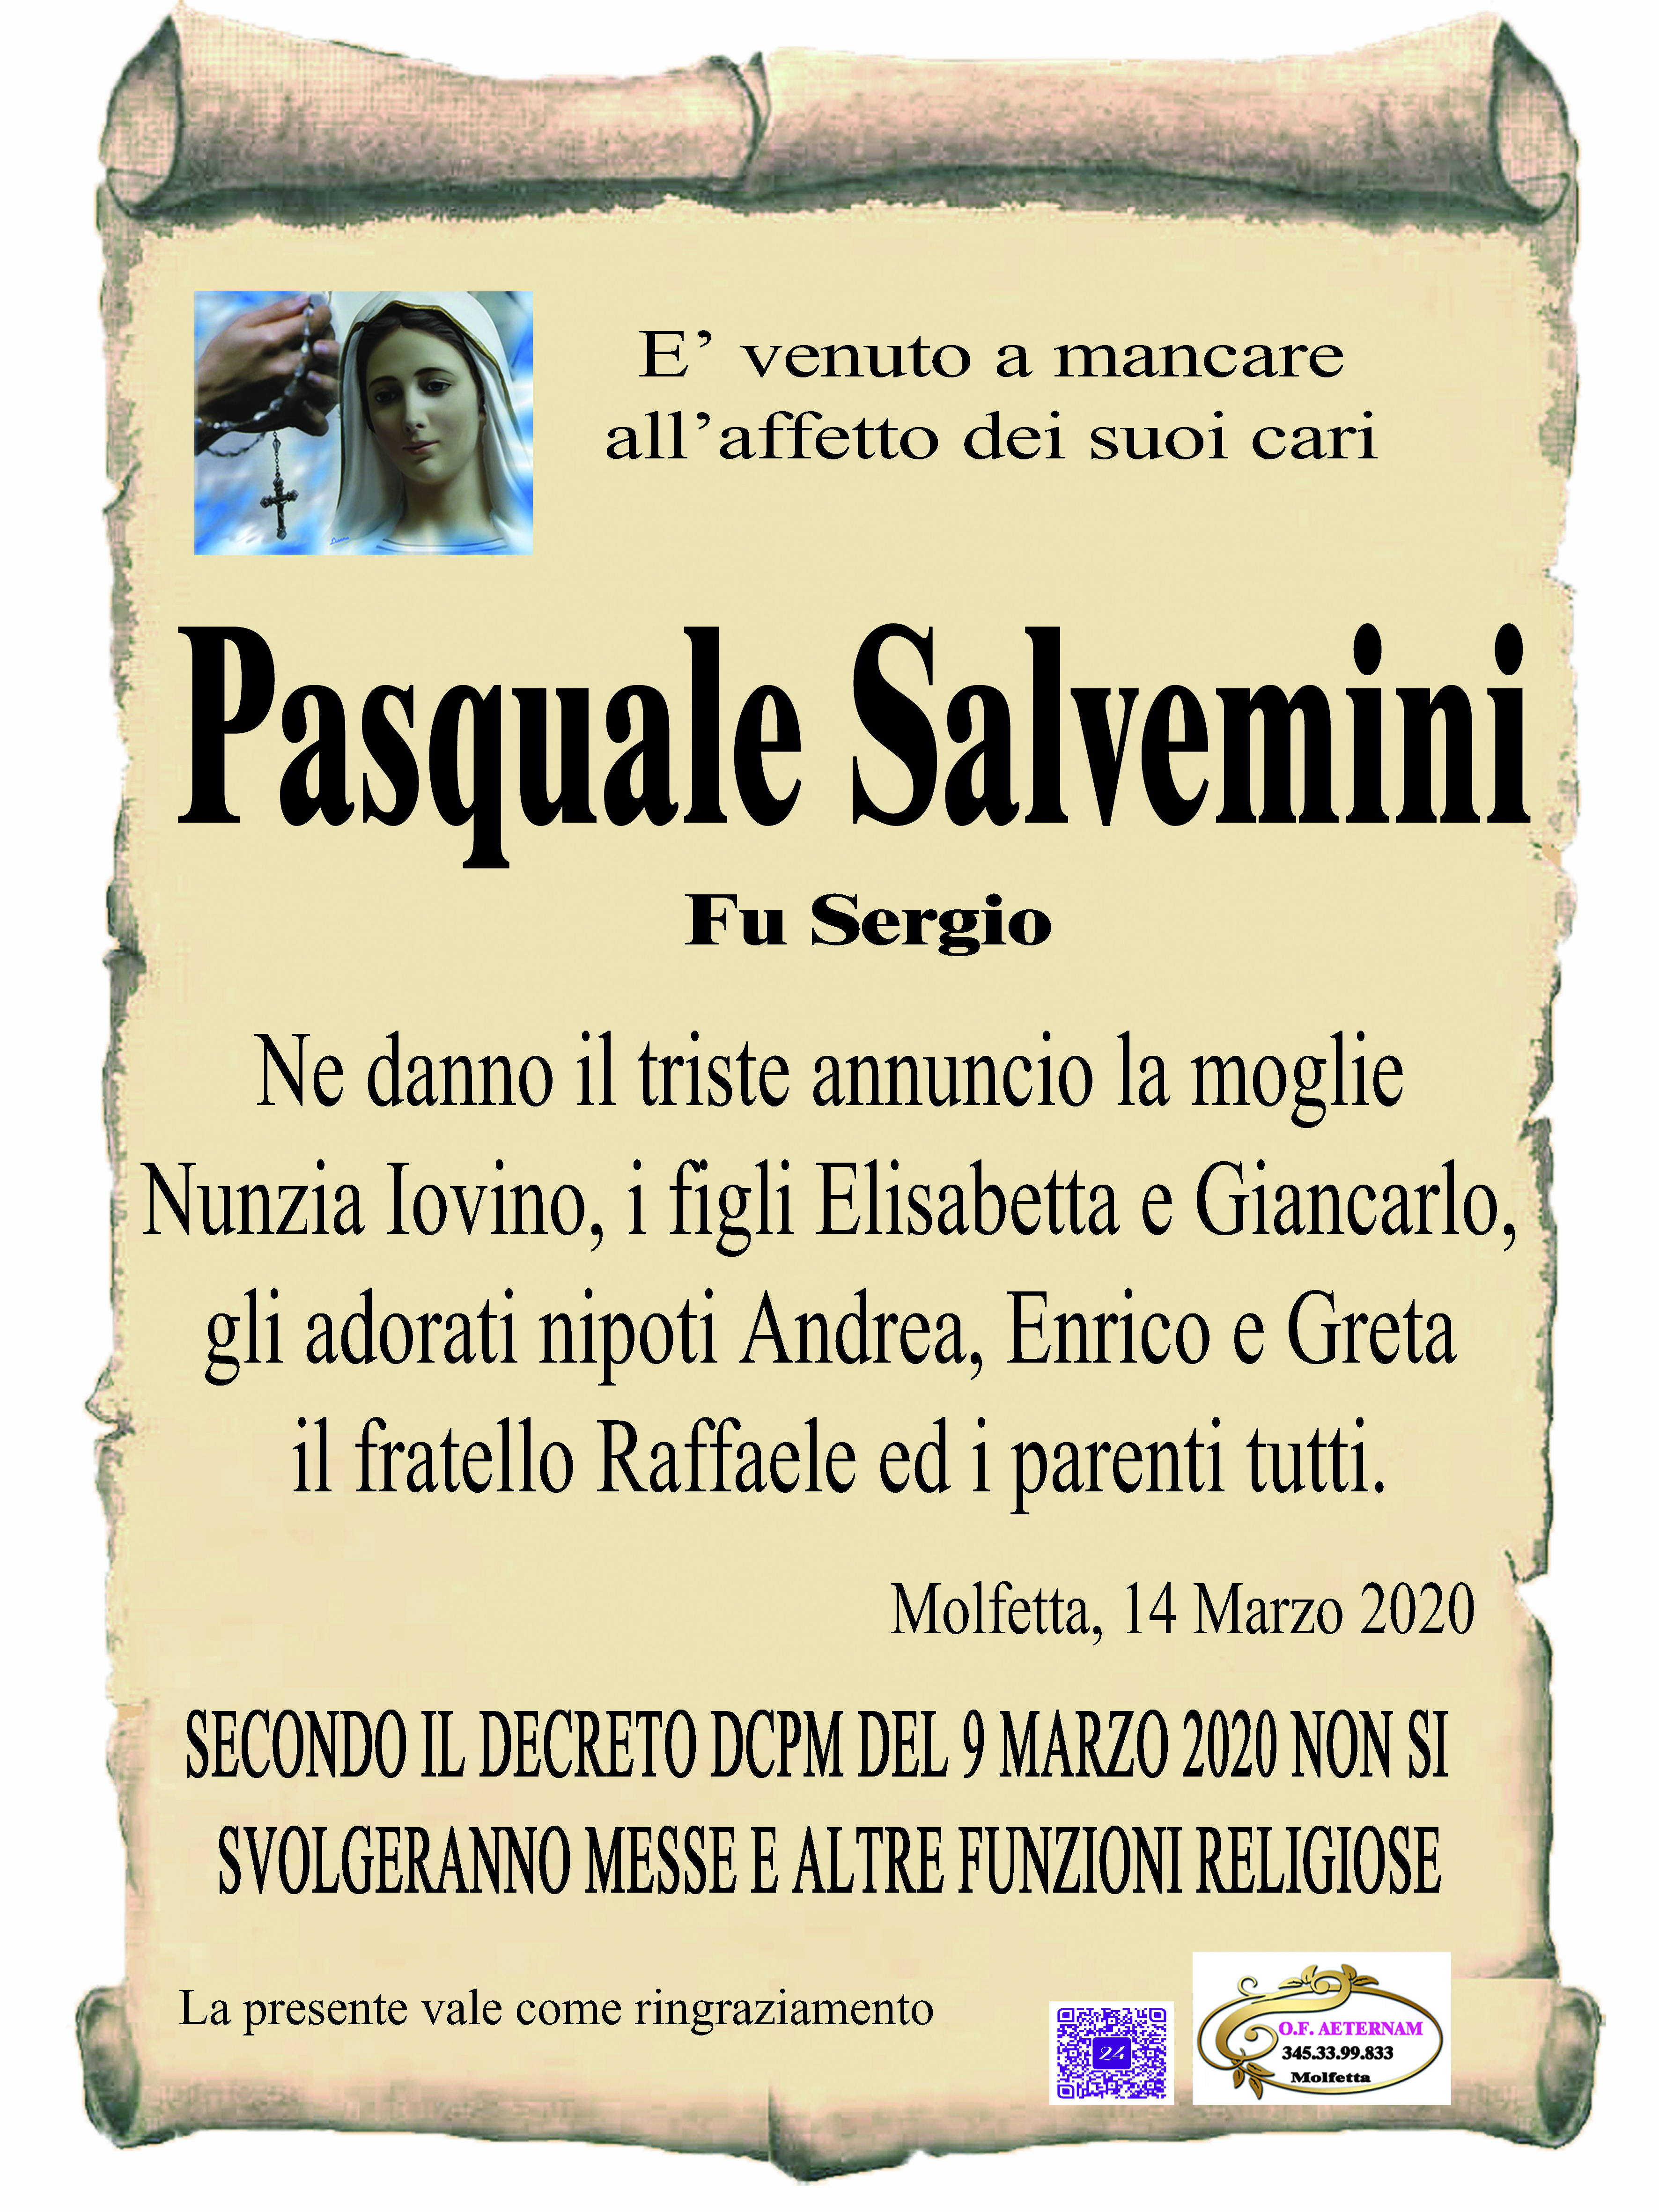 Pasquale Salvemini